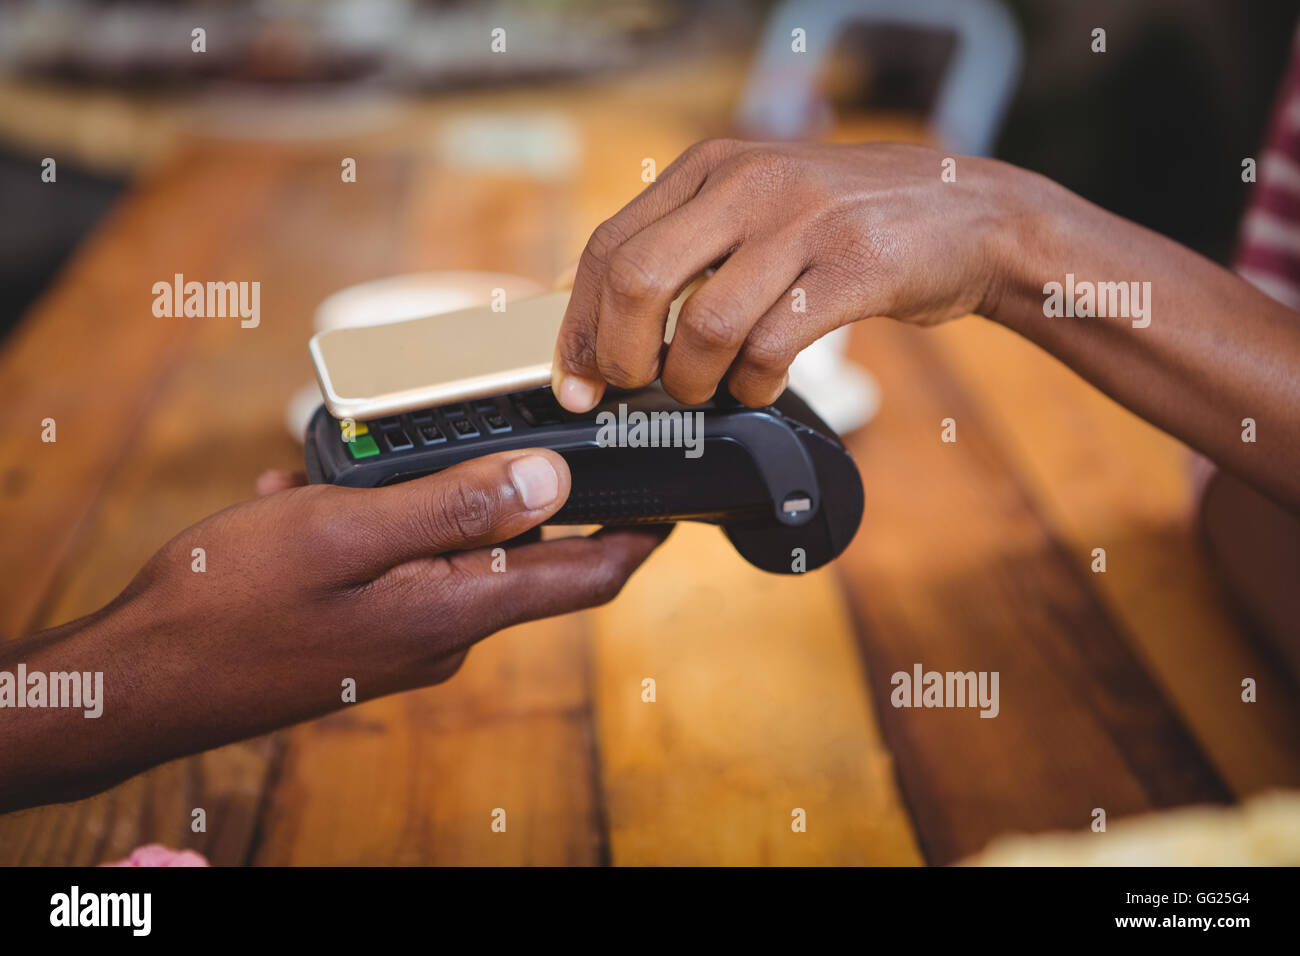 Frau von der Zahlung der Rechnung durch Smartphone mit nfc-Technologie Stockfoto